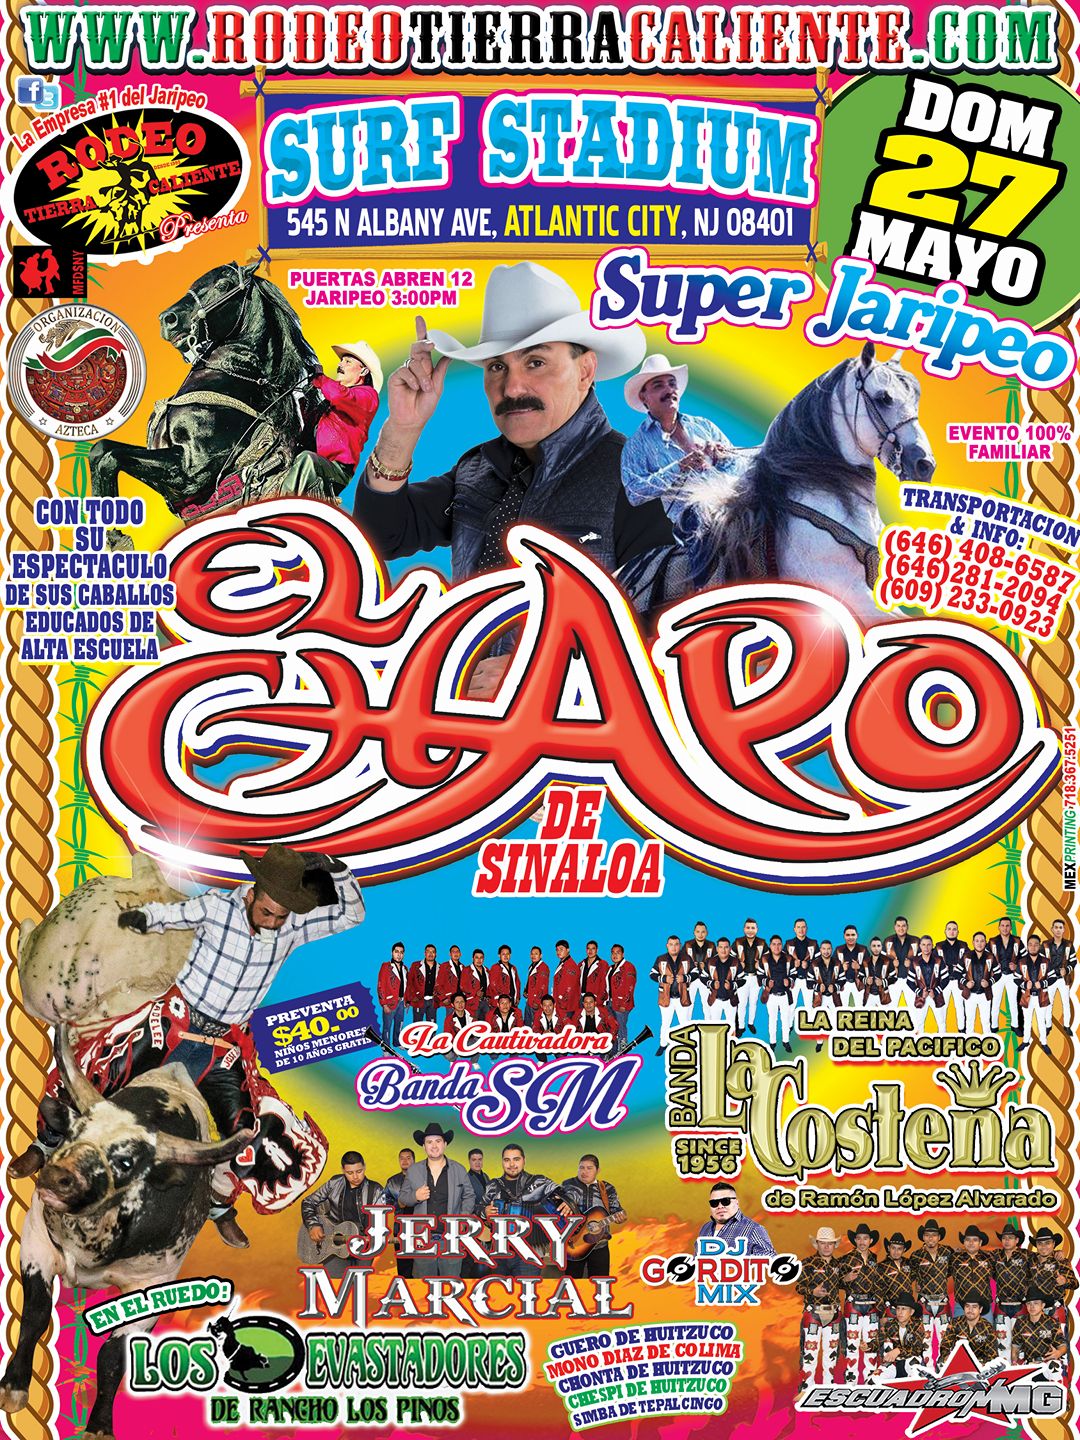 Super Jaripeo con El Chapo de Sinaloa, Rodeo Tierra Caliente MG